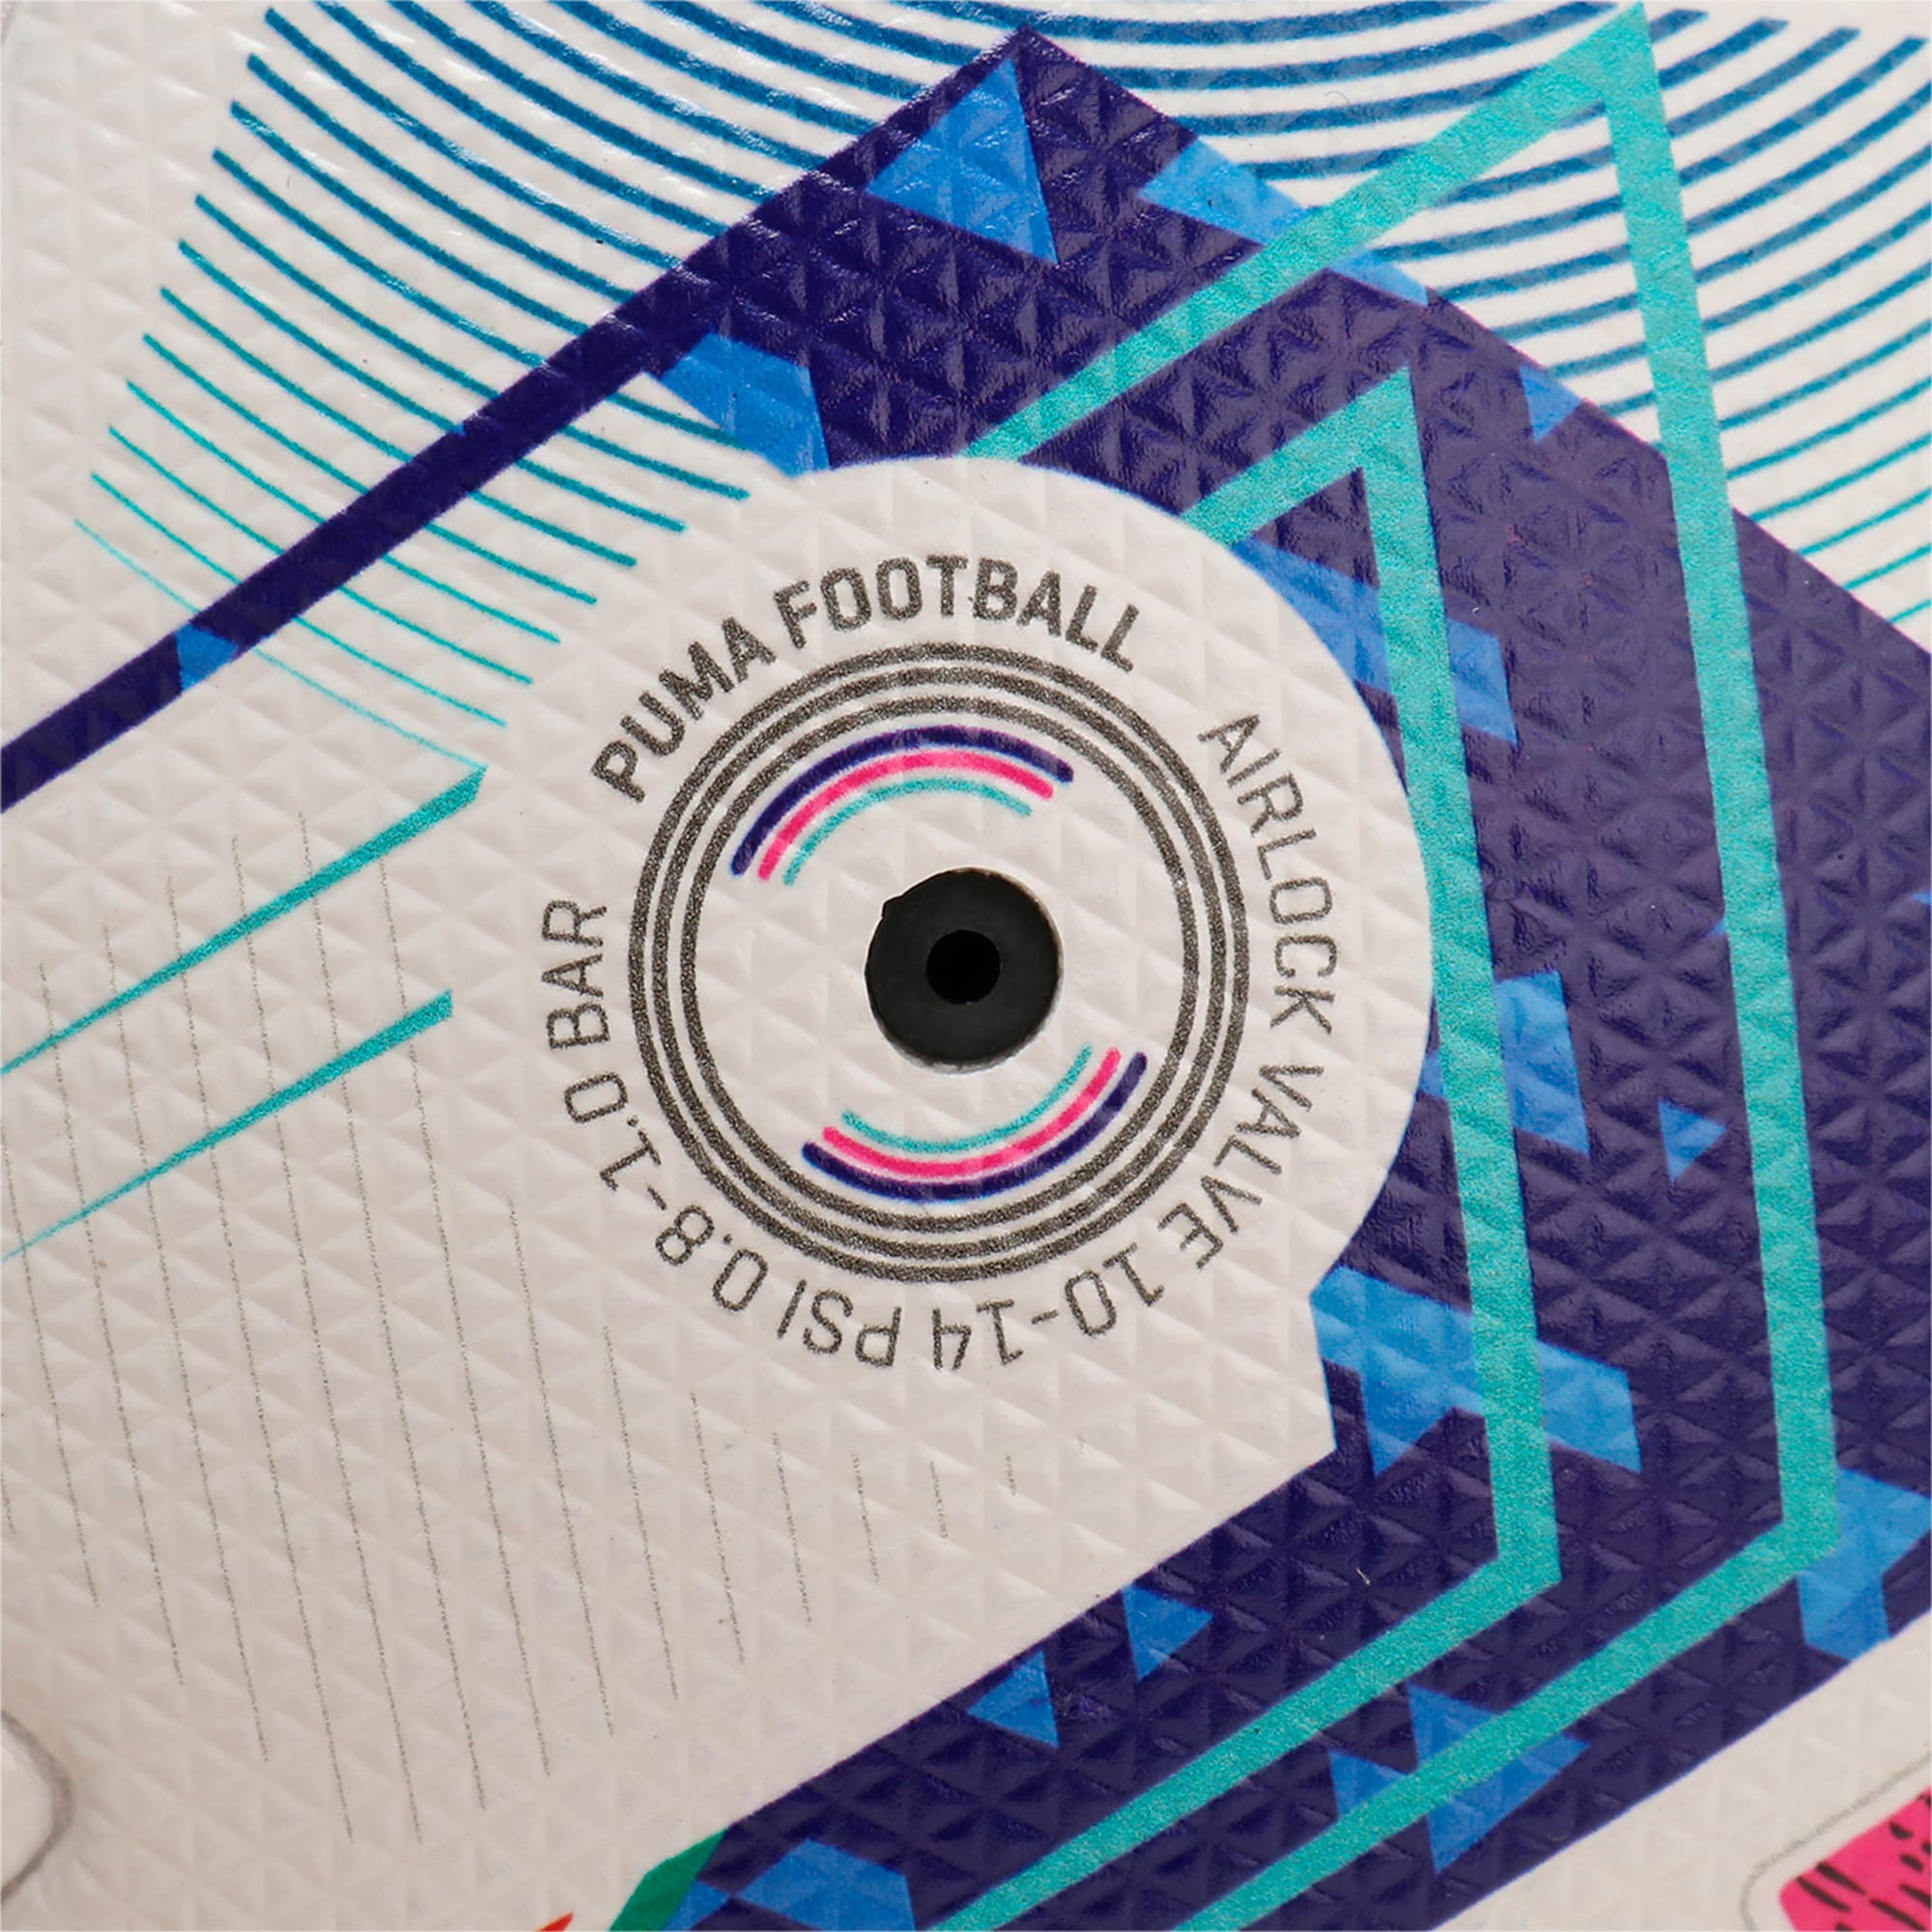 PUMA Orbita Serie A Pro Fußball Für Damen, Weiß/Blau, Größe: 5, Accessoires